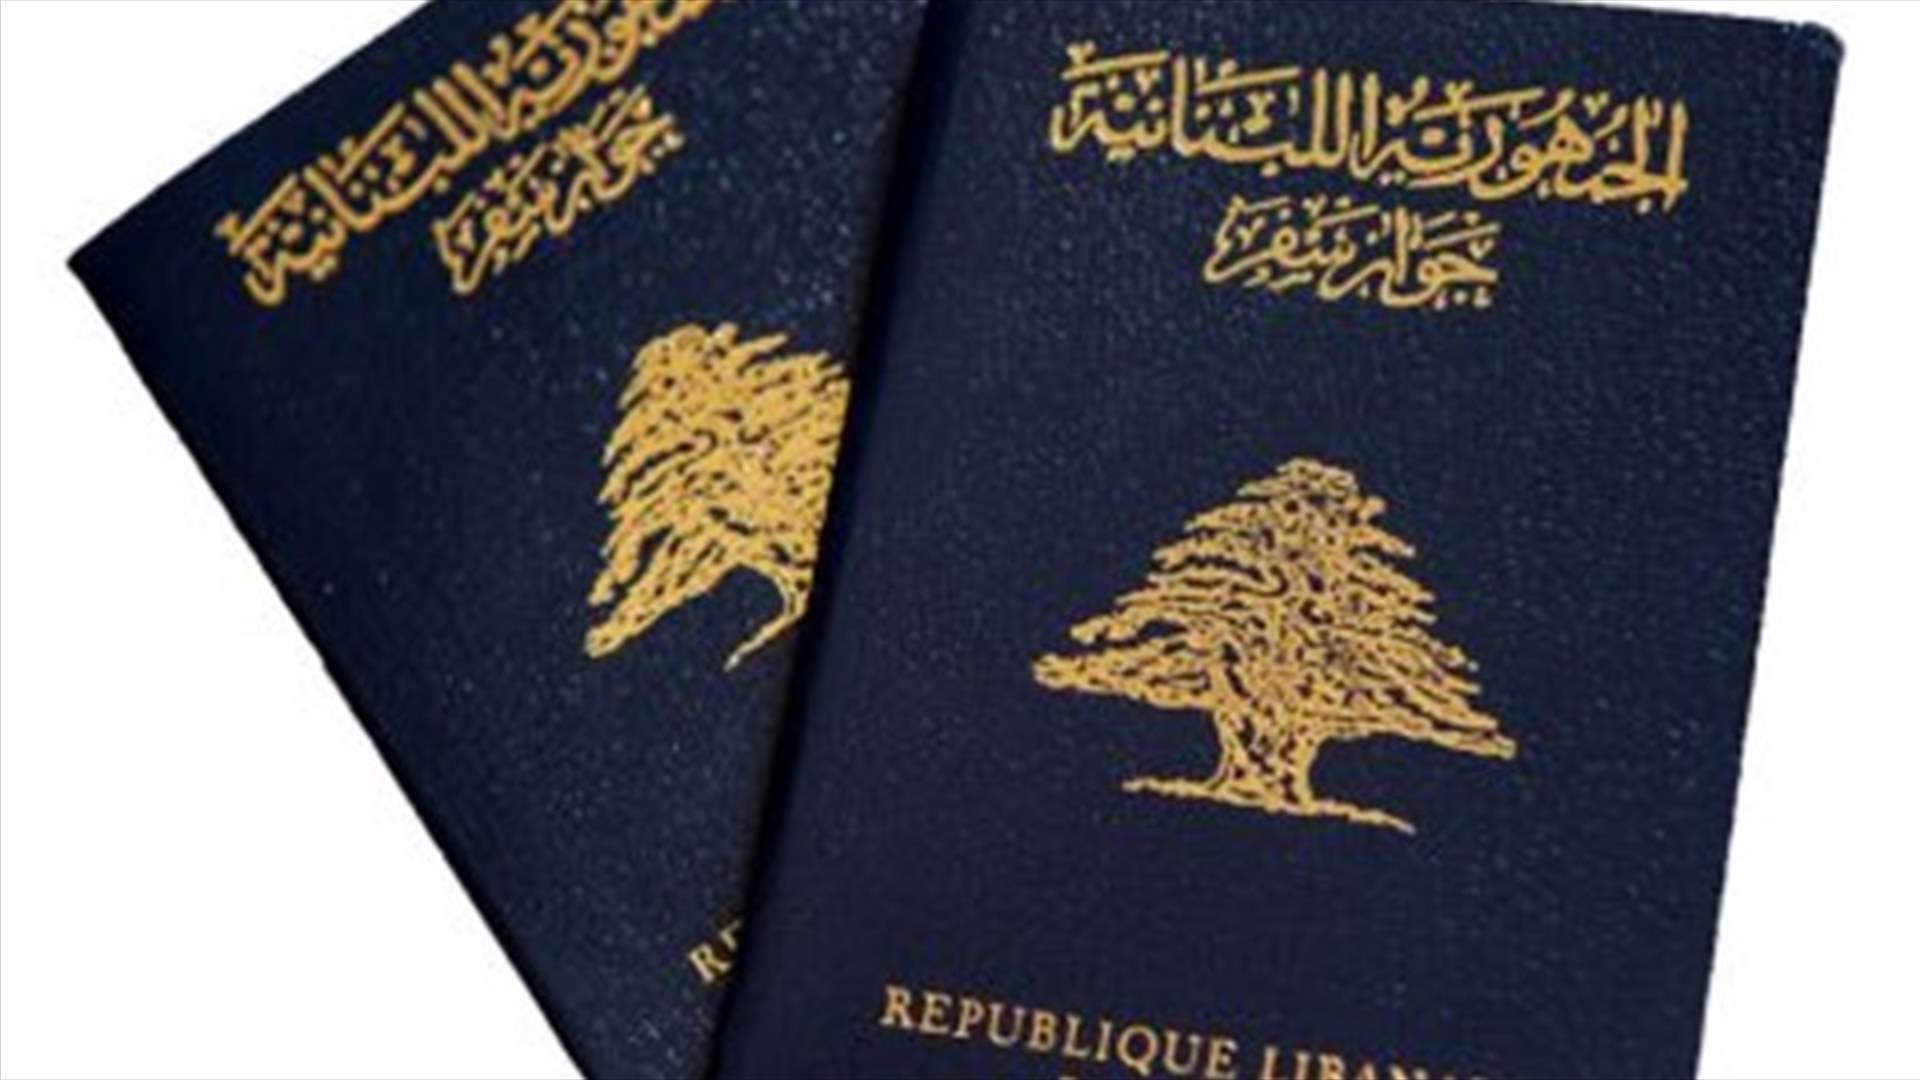 الامن العام: لا صحة للمعلومات حول الغاء جوازات السفر المكتوبة باليد